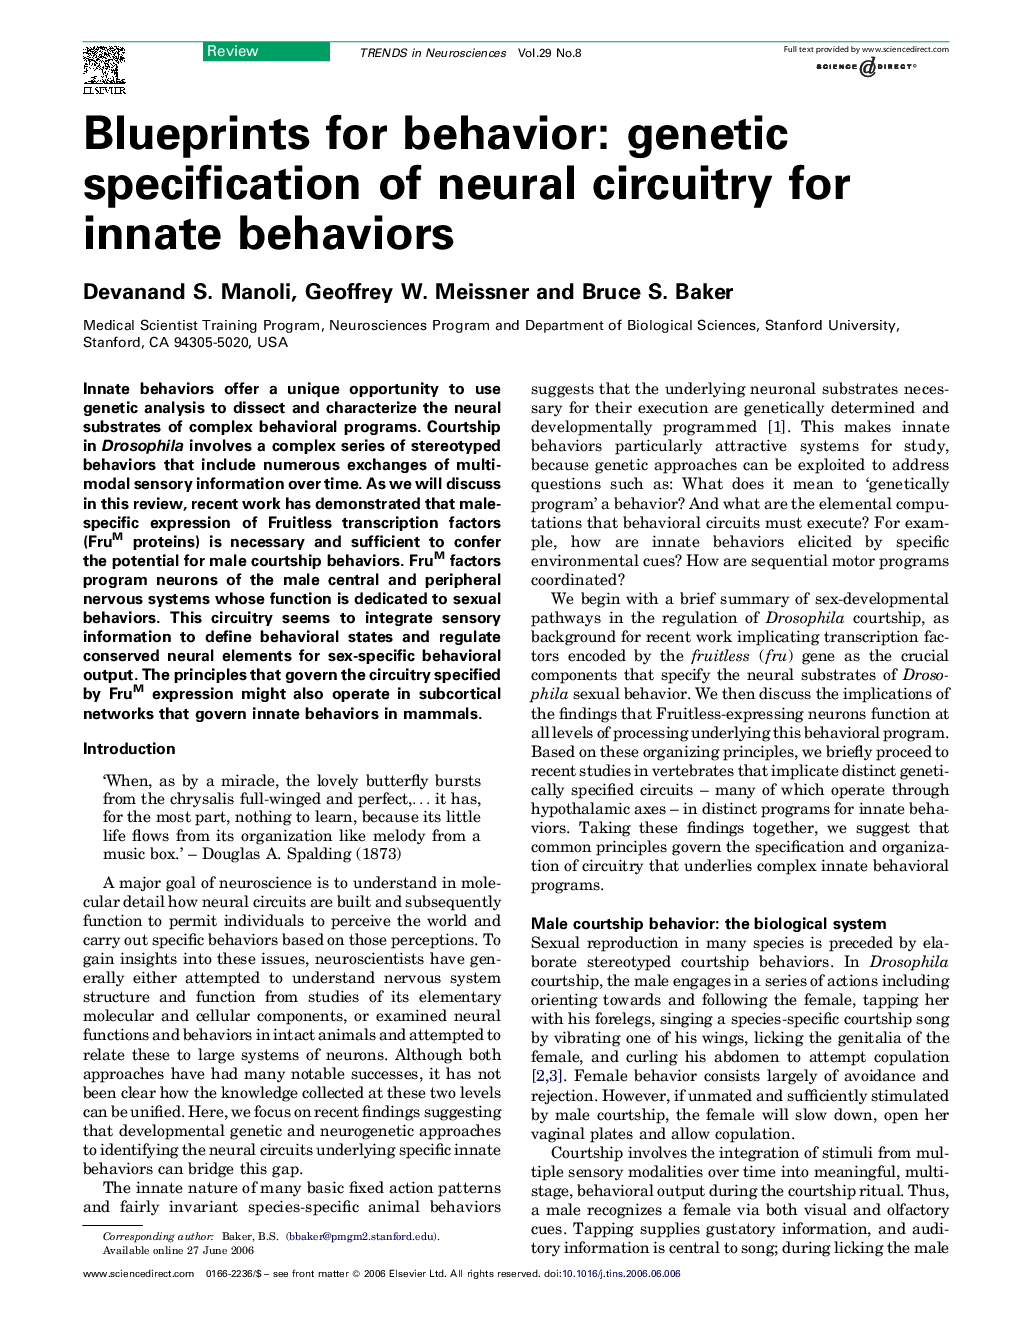 Blueprints for behavior: genetic specification of neural circuitry for innate behaviors